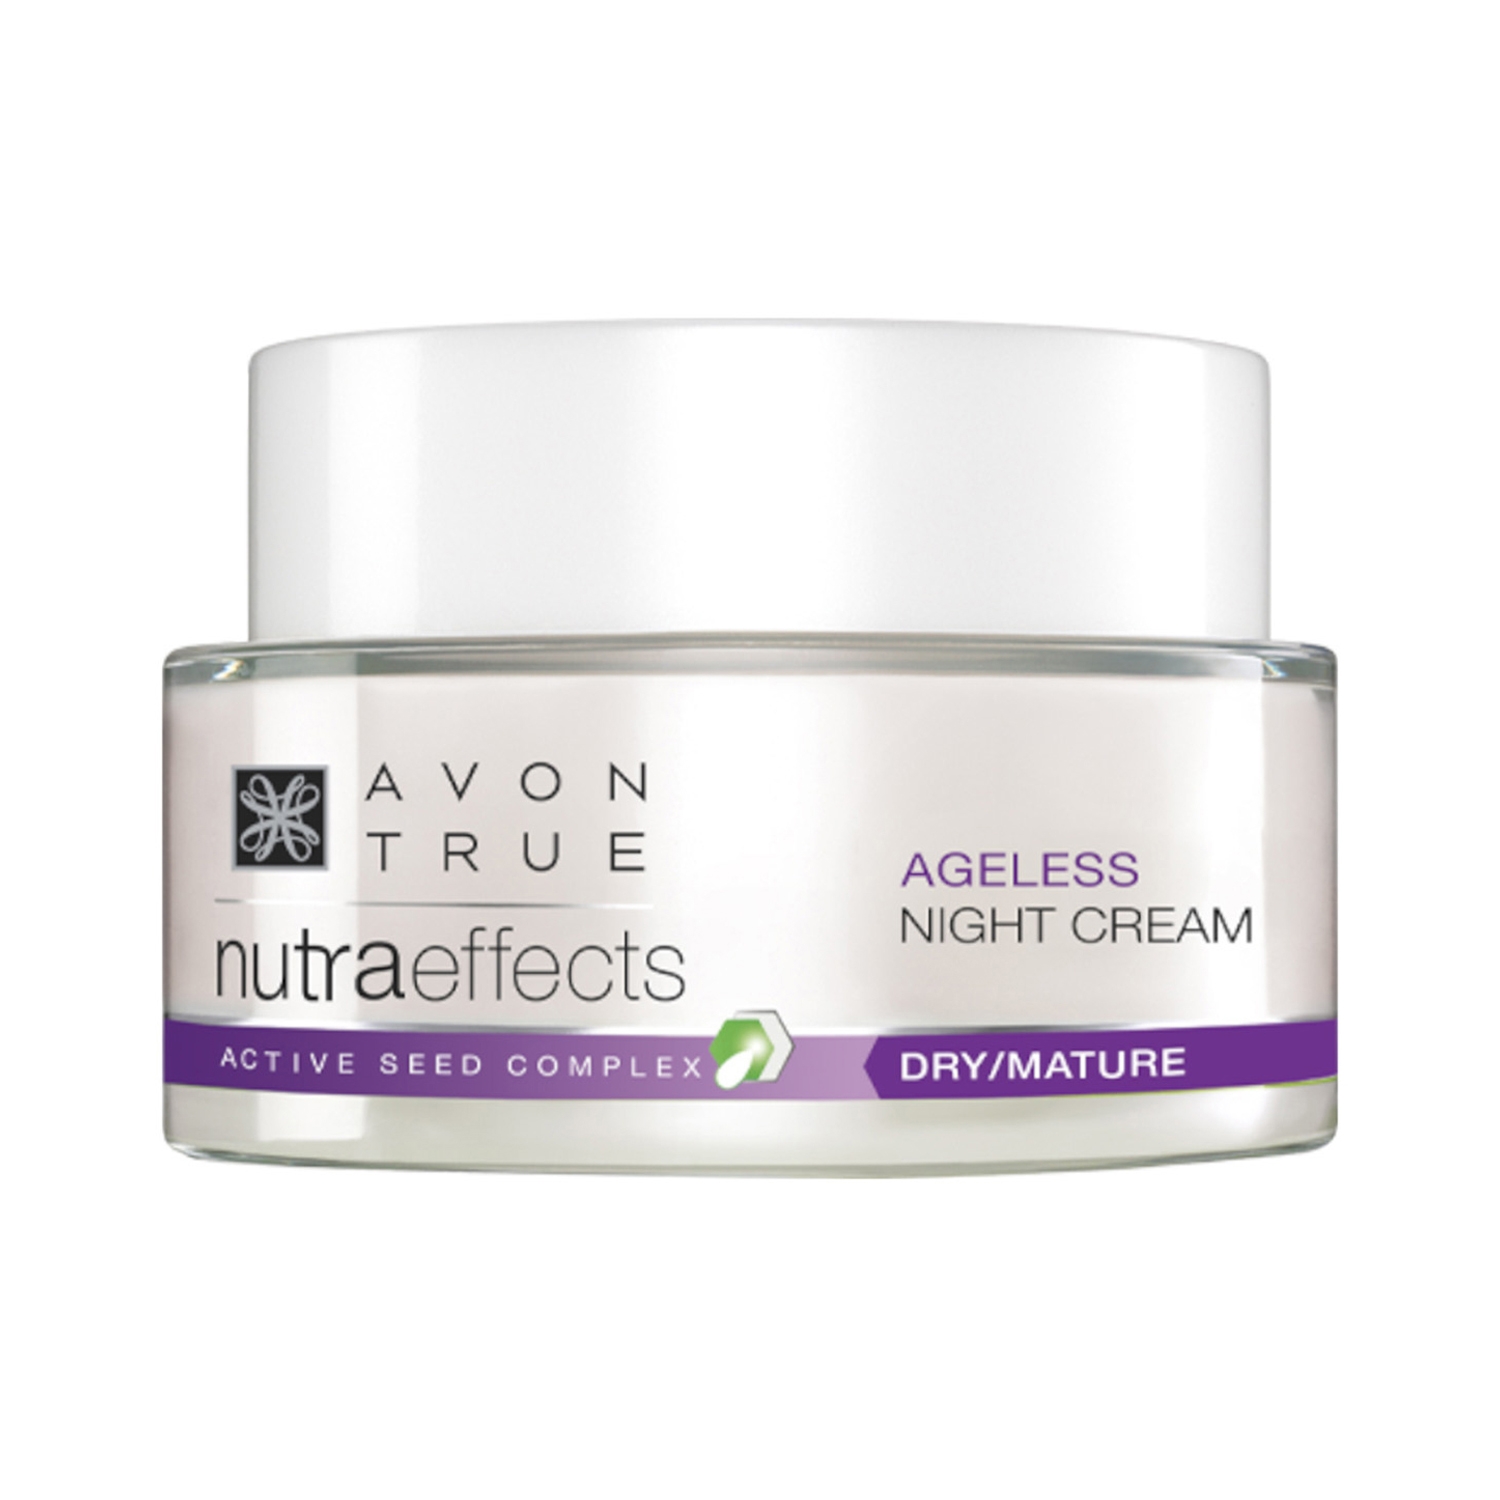 Avon | Avon True Nutraeffects Ageless Night Cream (50g)